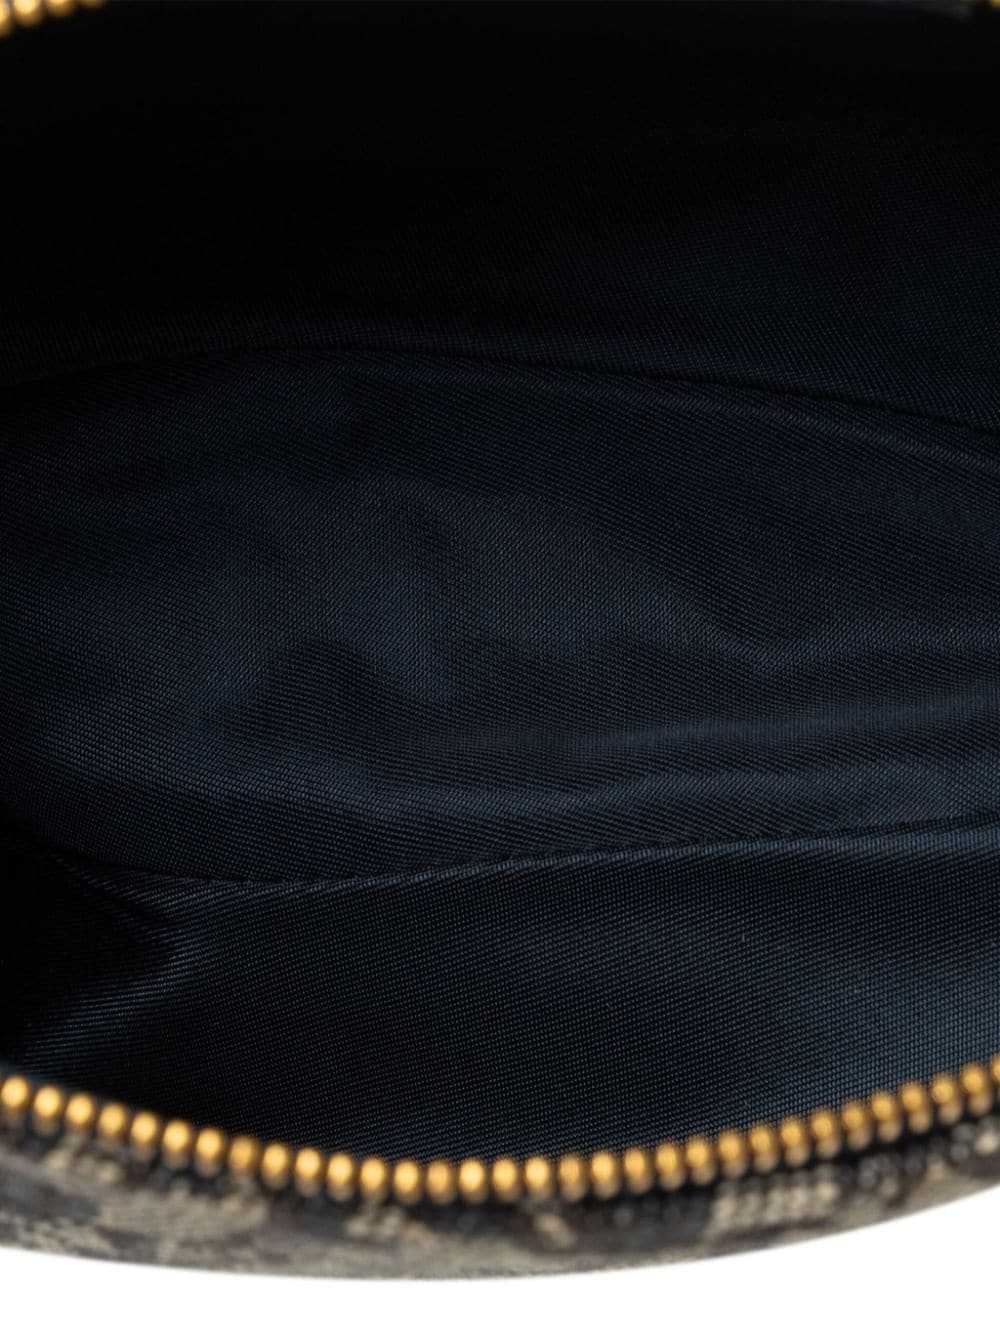 Christian Dior Pre-Owned 2001 Mini Oblique Saddle… - image 5